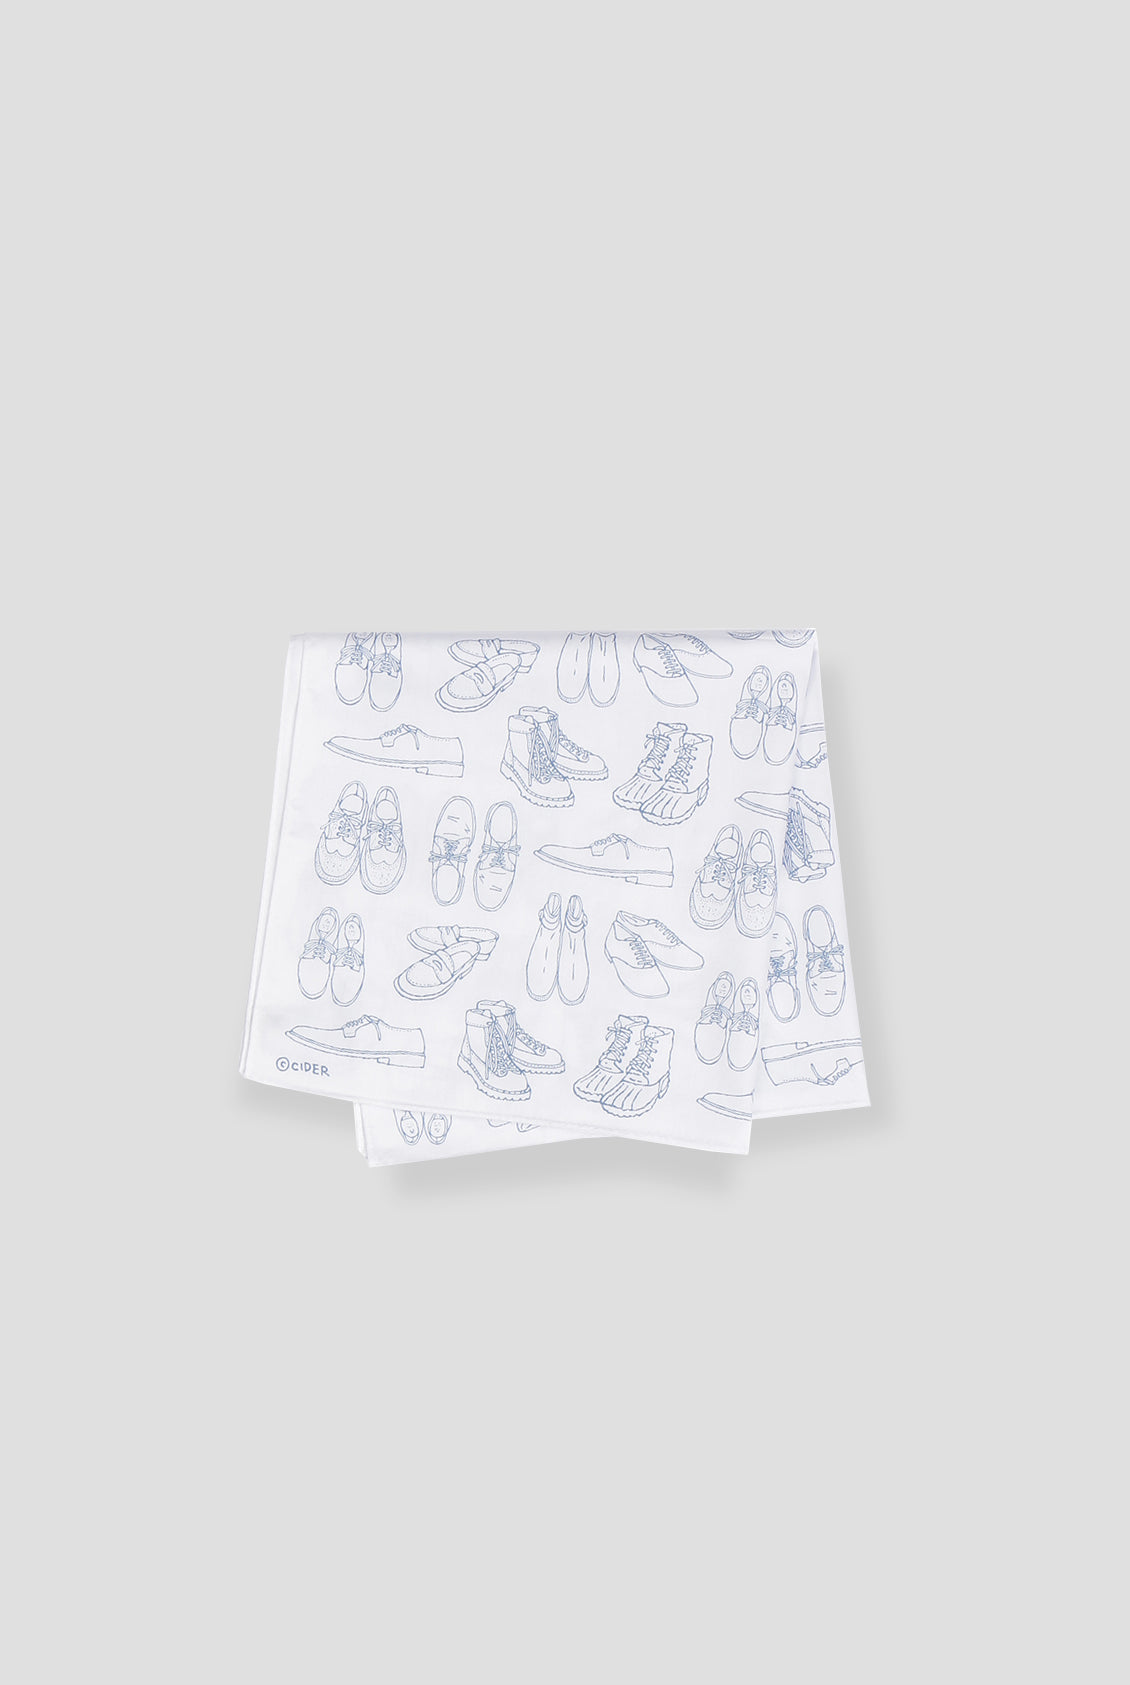 Shoe Pattern Scarf/Handkerchief